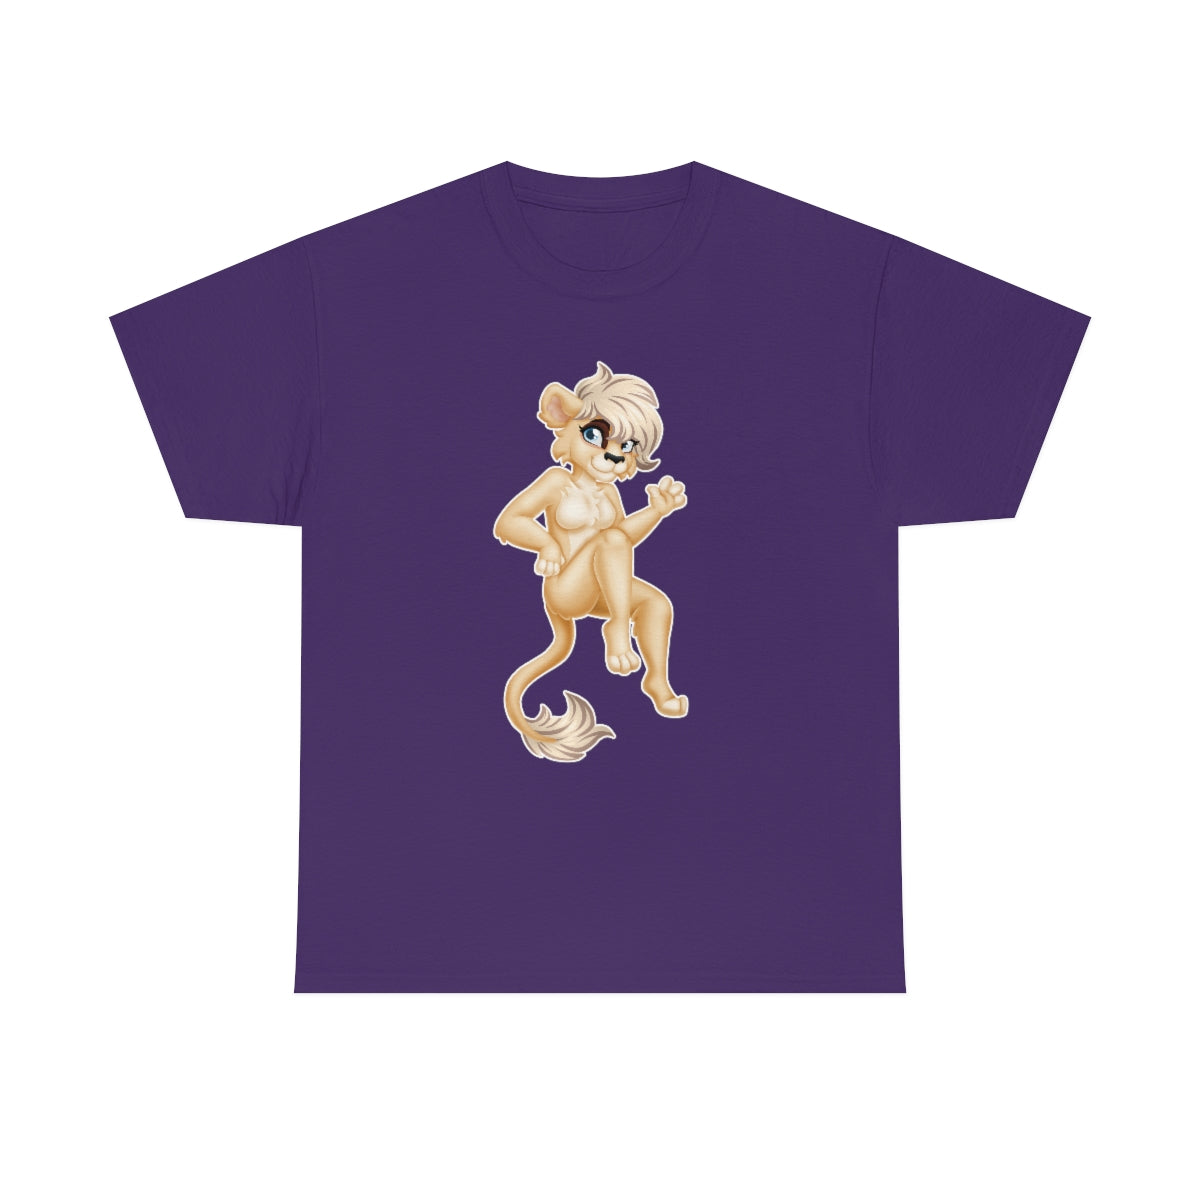 Lion Girl - T-Shirt T-Shirt Artworktee Purple S 